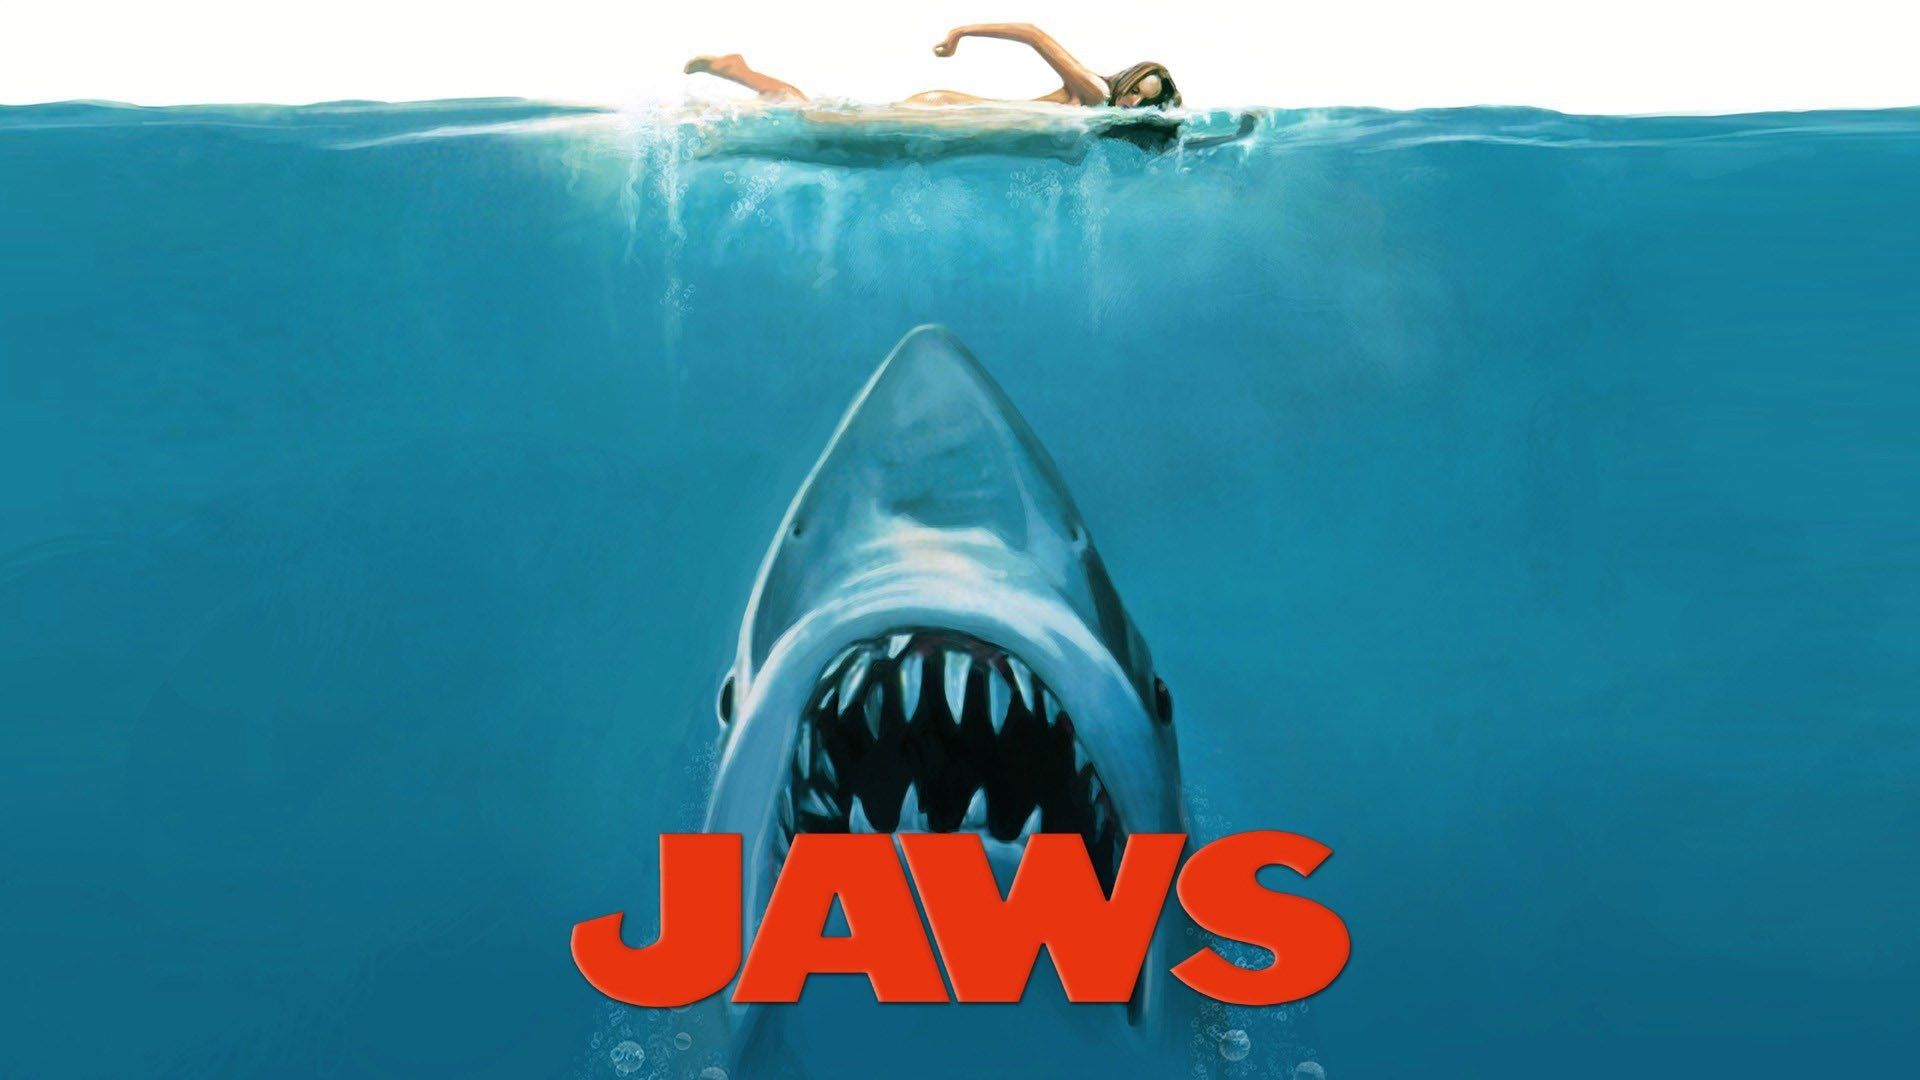 Watch Jaws (1975) Full Movie Online - Plex